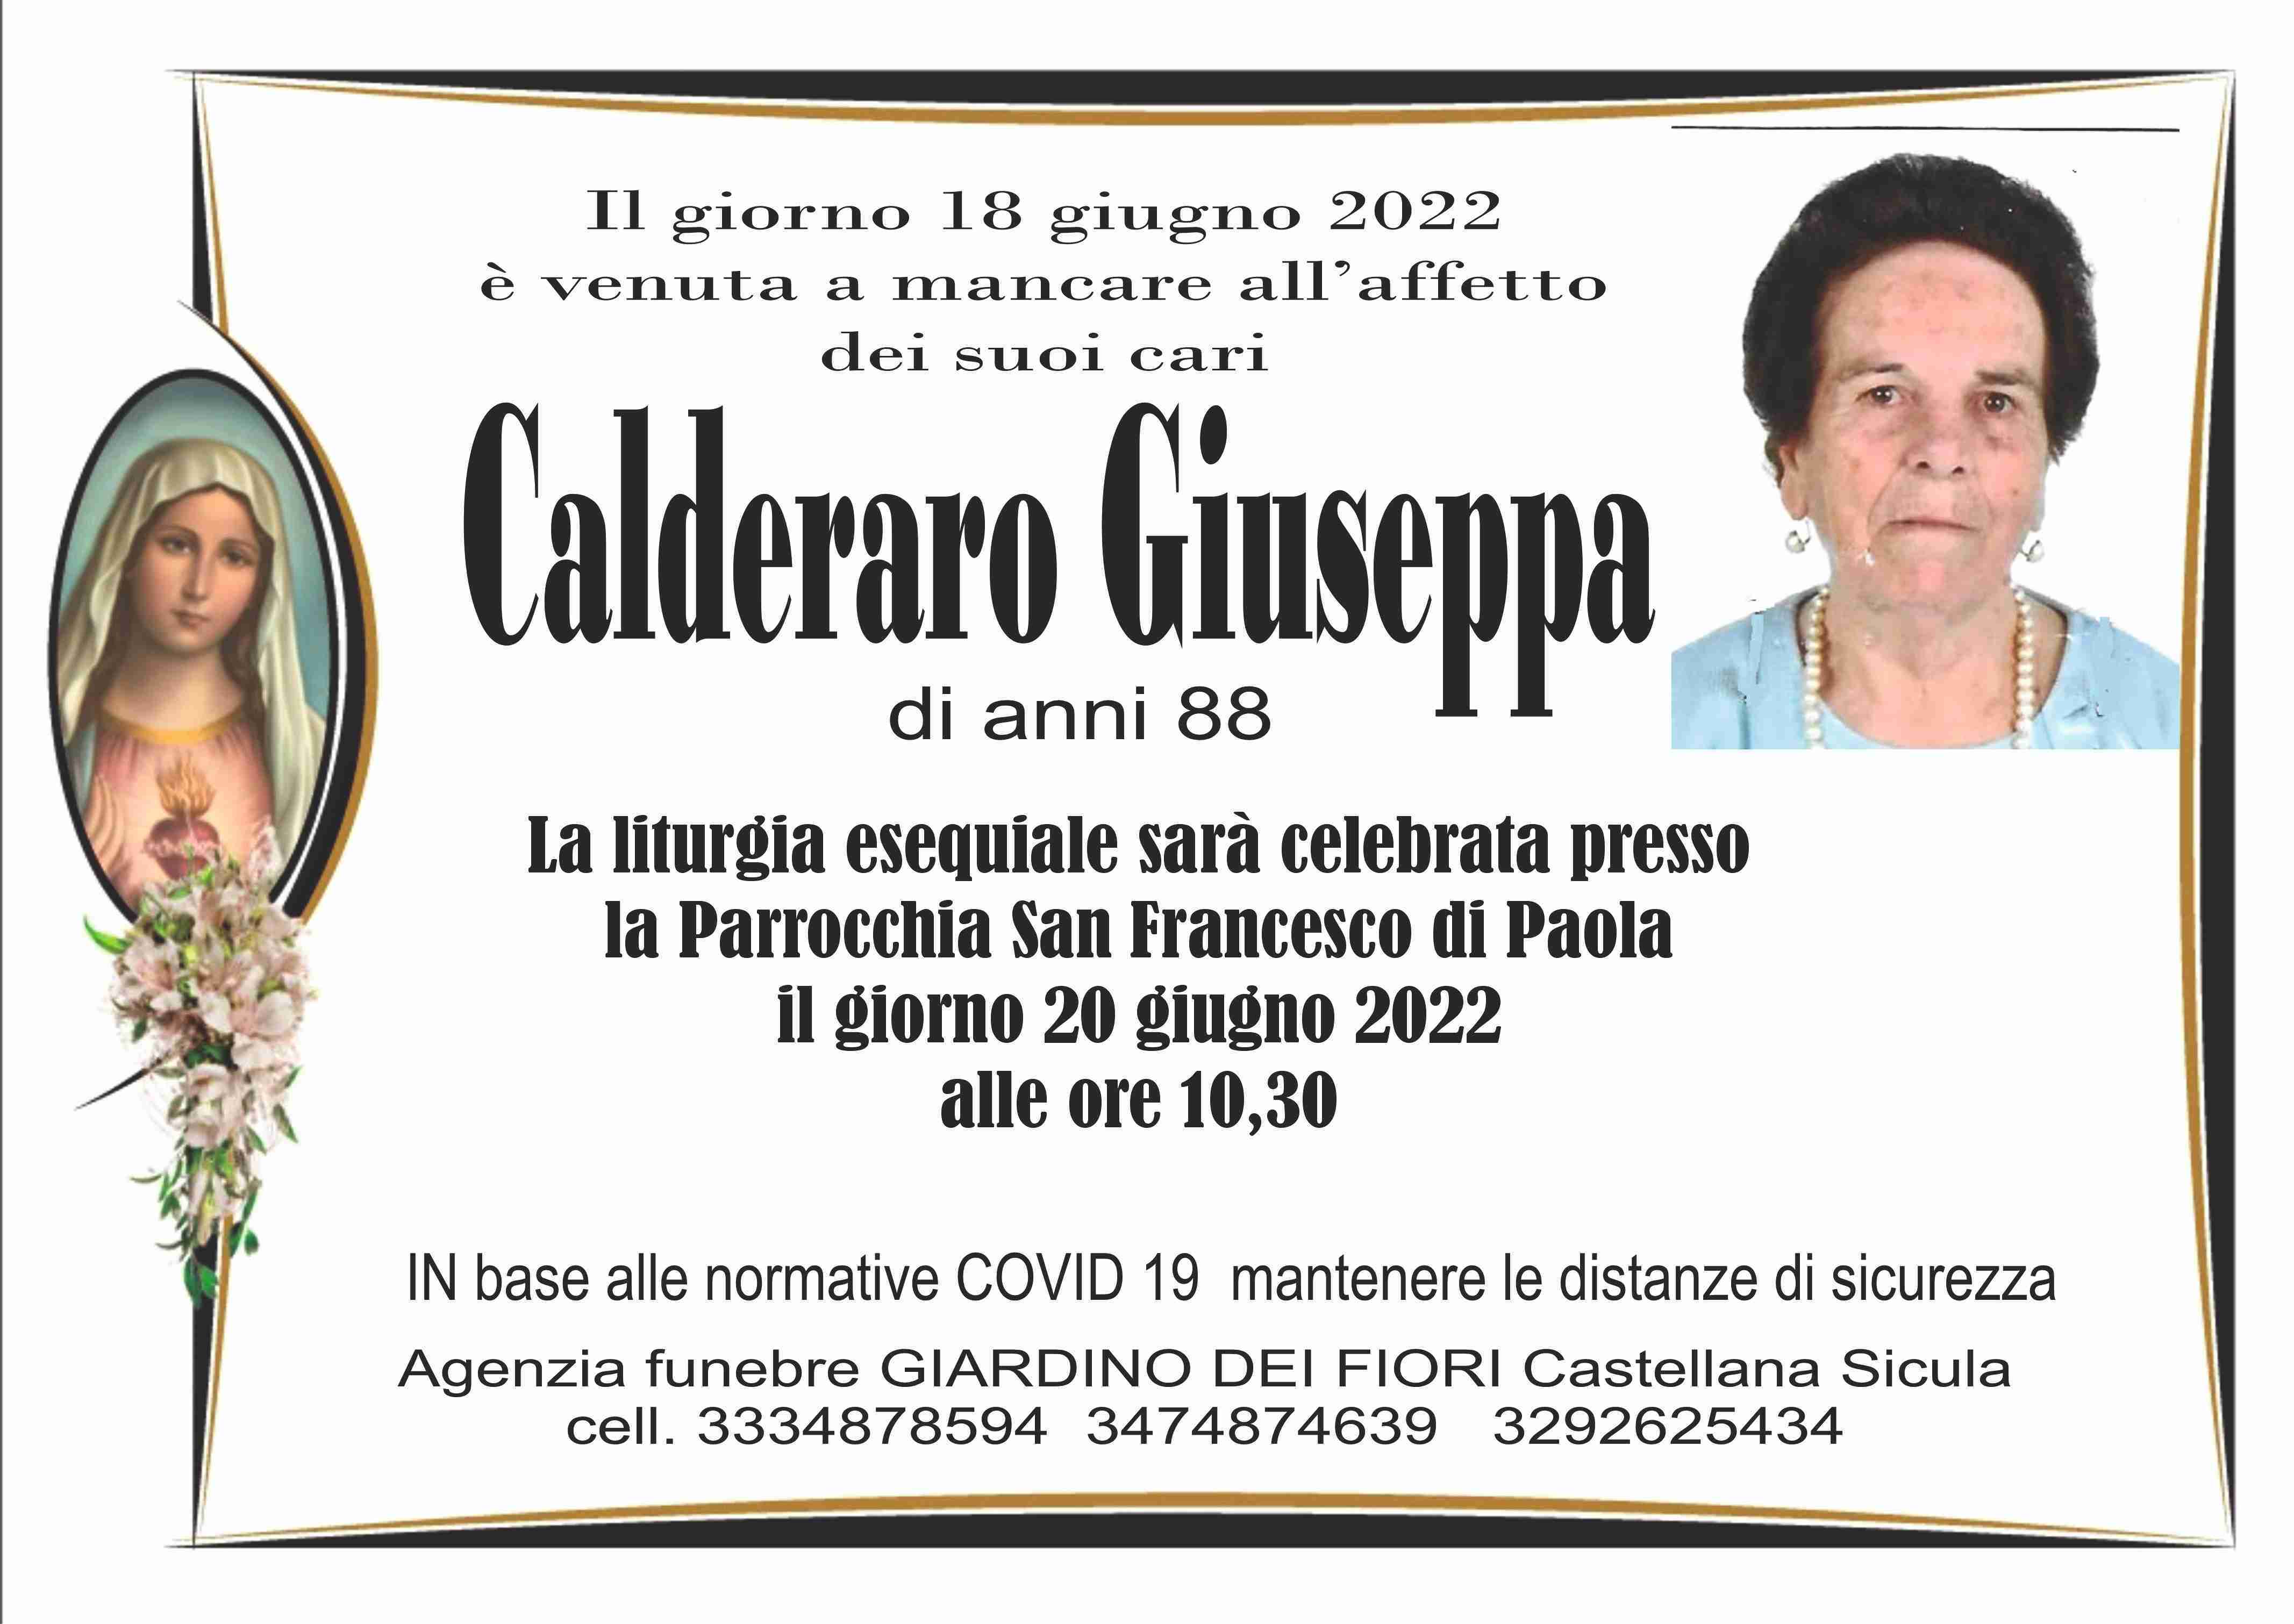 Giuseppa Calderaro